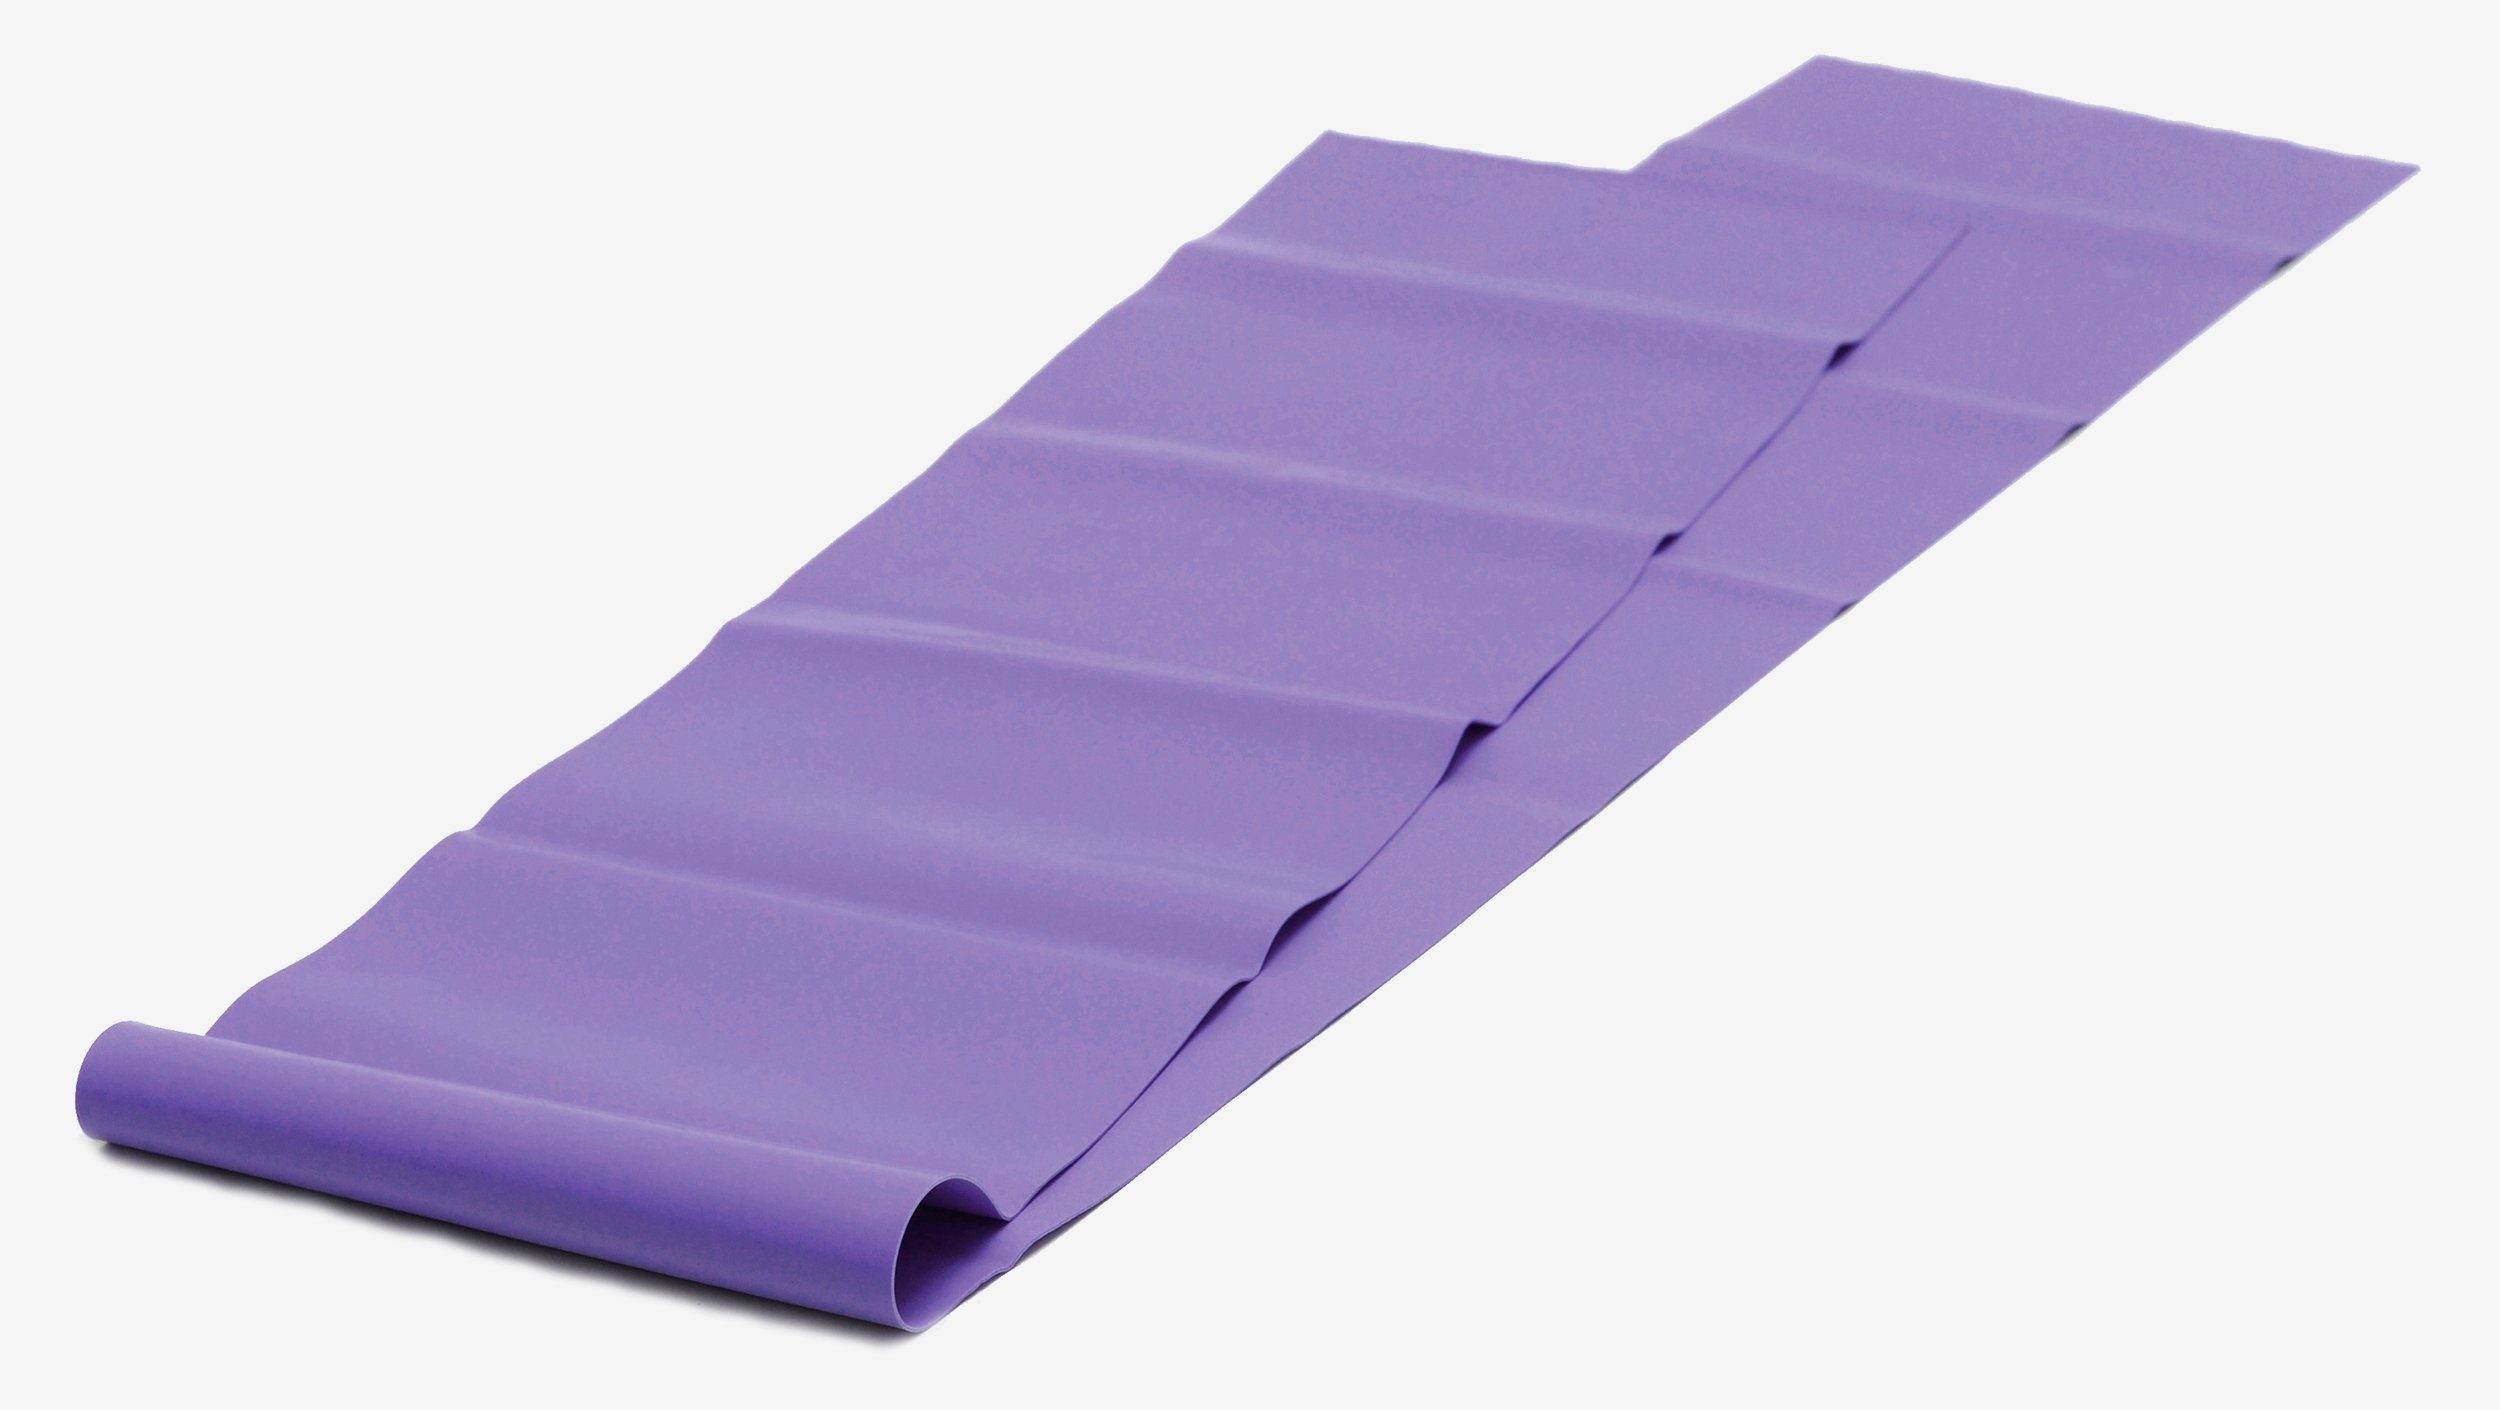 Yogistar Stretchband Pilates Stretchband Classic, Weiches Theraband für Pilates und andere Trainingsformen. violett